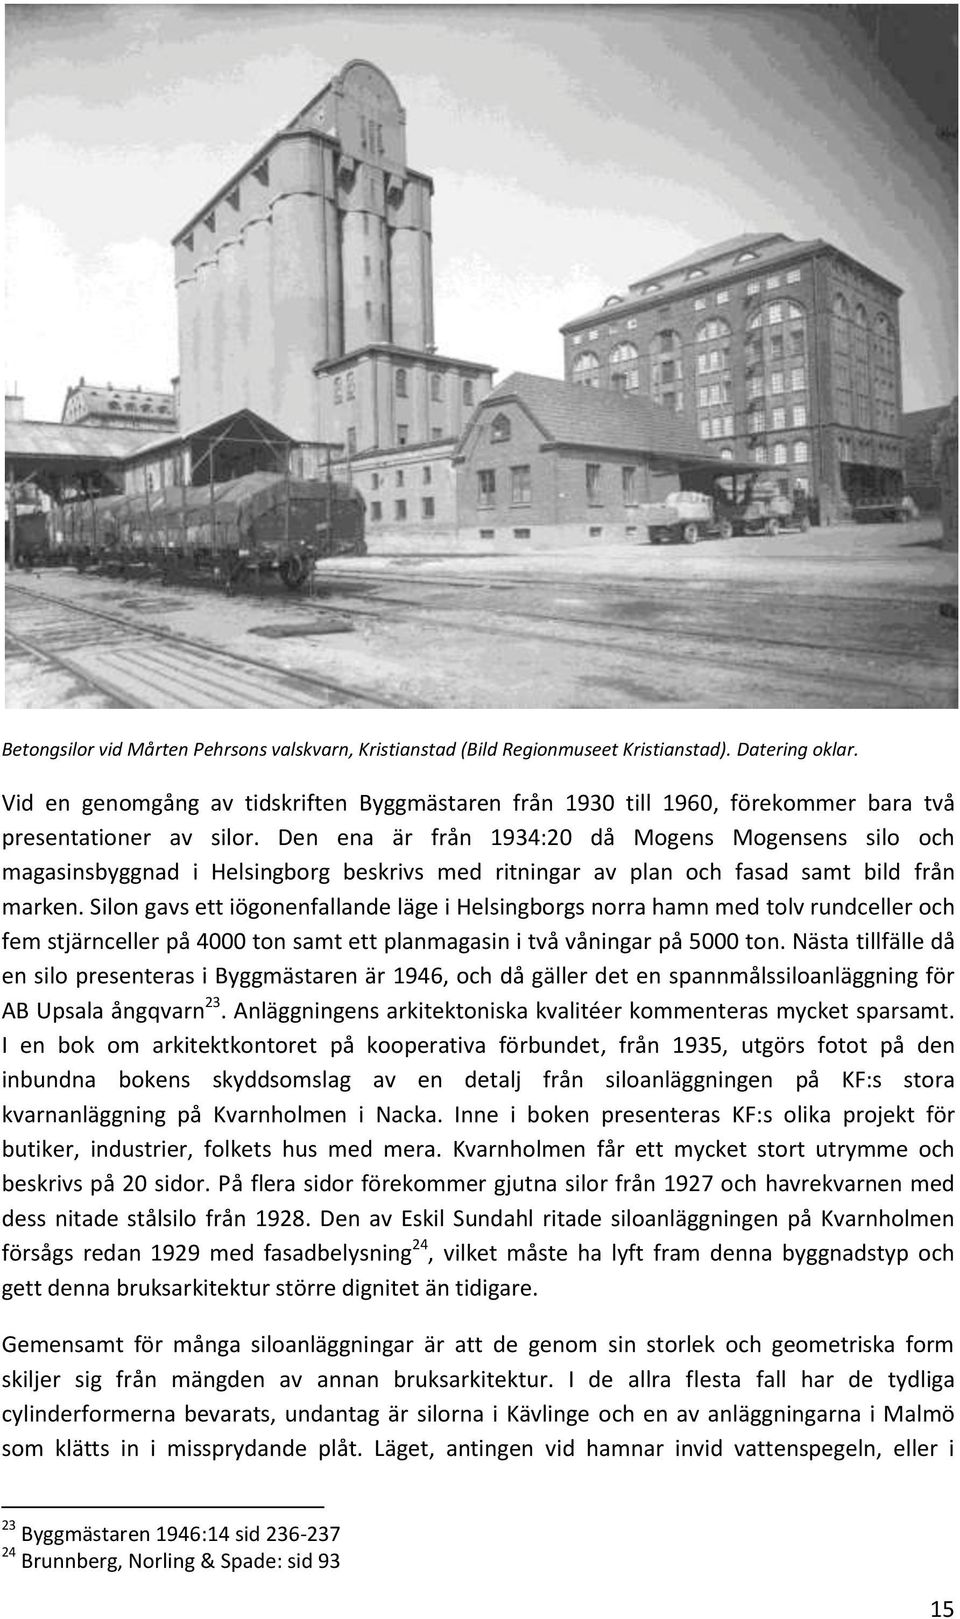 Den ena är från 1934:20 då Mogens Mogensens silo och magasinsbyggnad i Helsingborg beskrivs med ritningar av plan och fasad samt bild från marken.